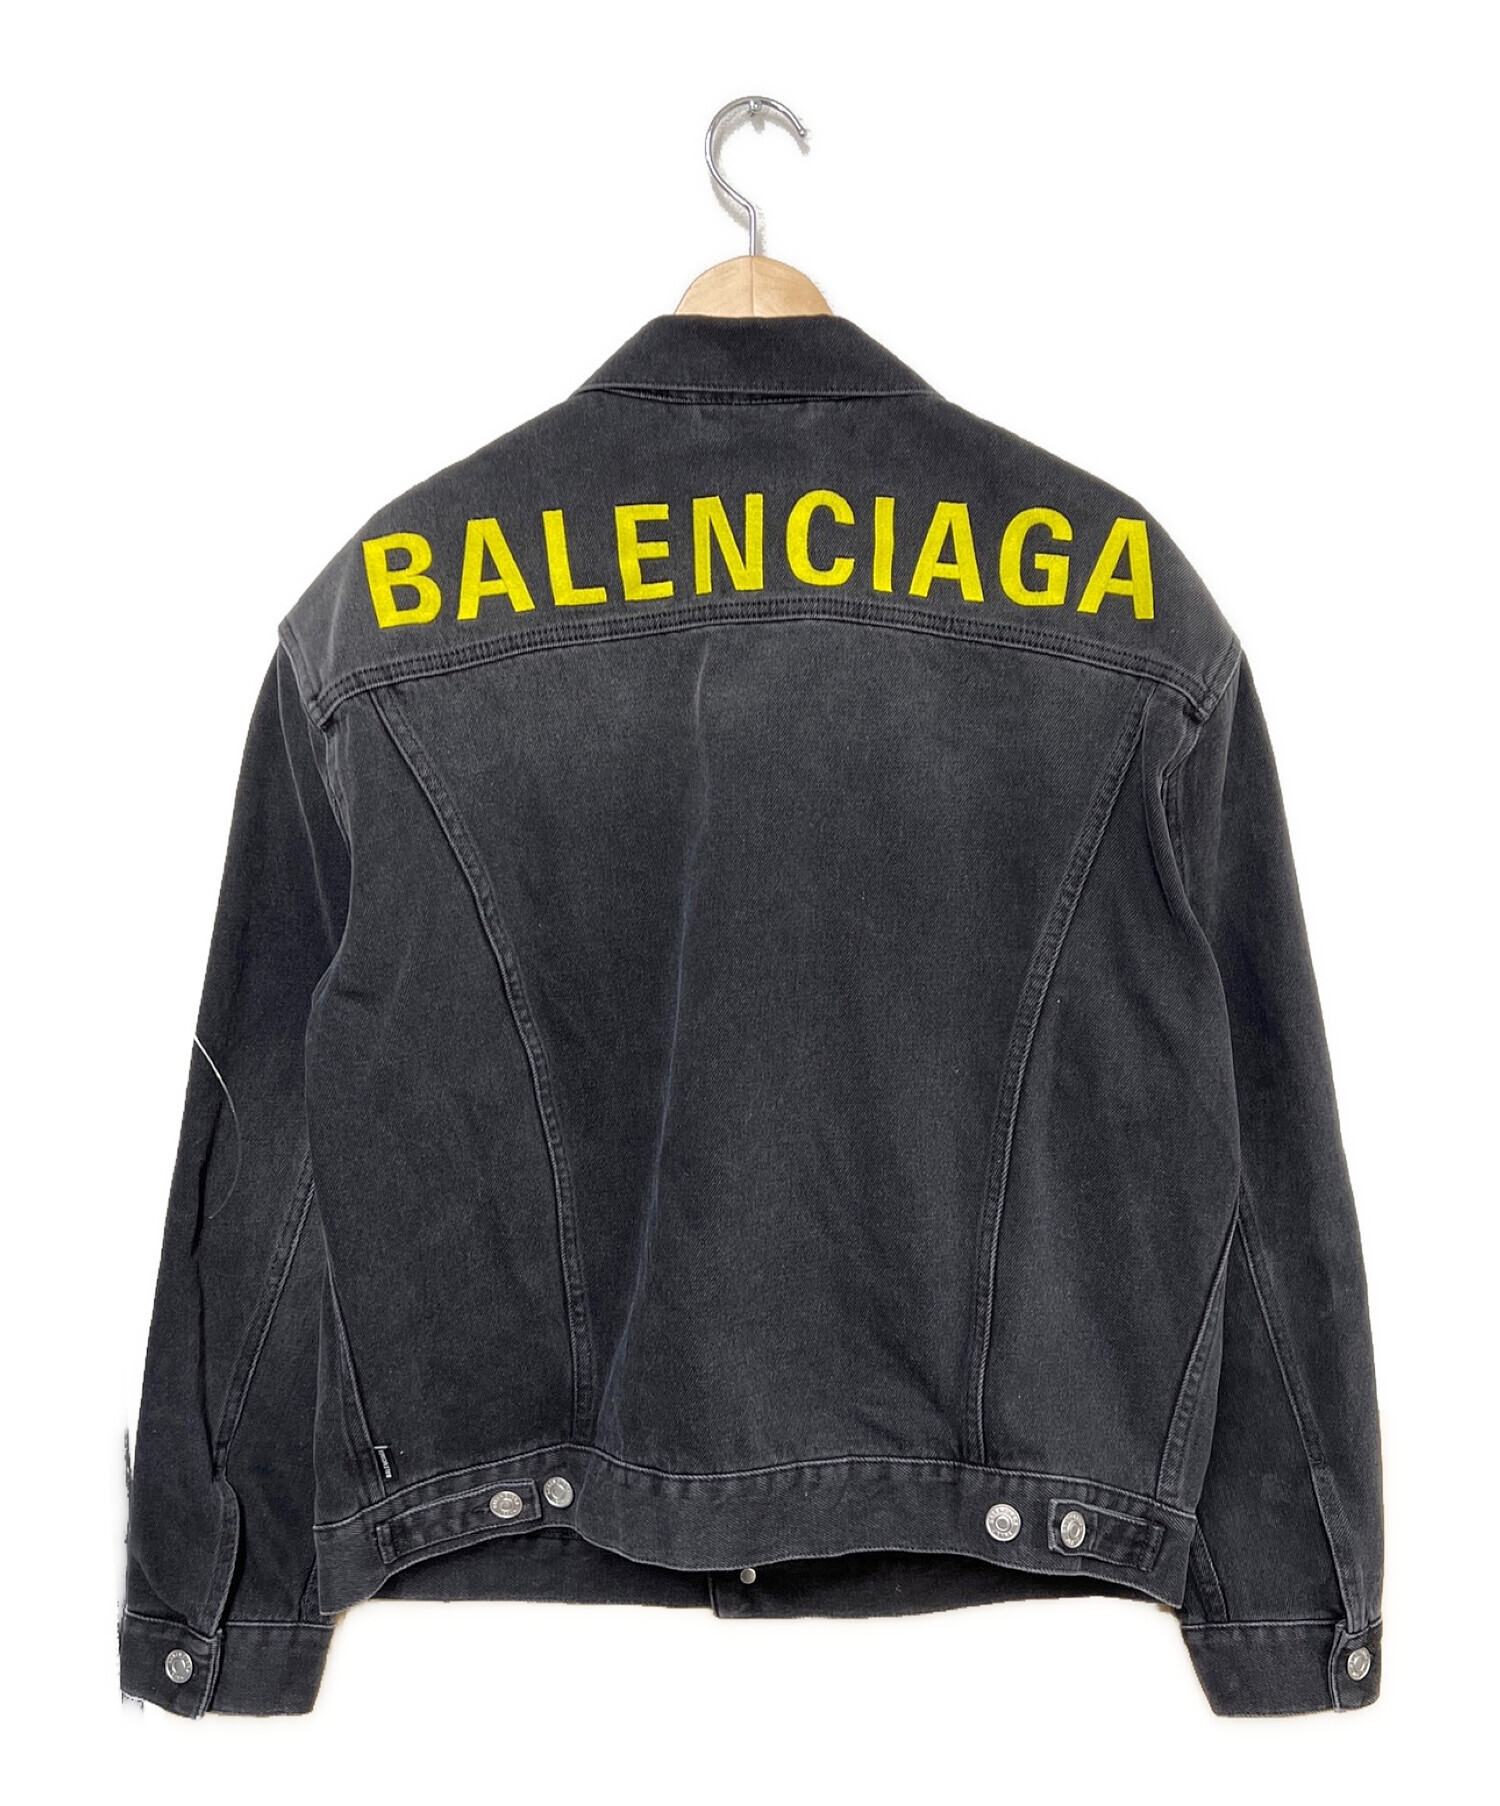 BALENCIAGA (バレンシアガ) デニムジャケット ブラック サイズ:SIZE 44